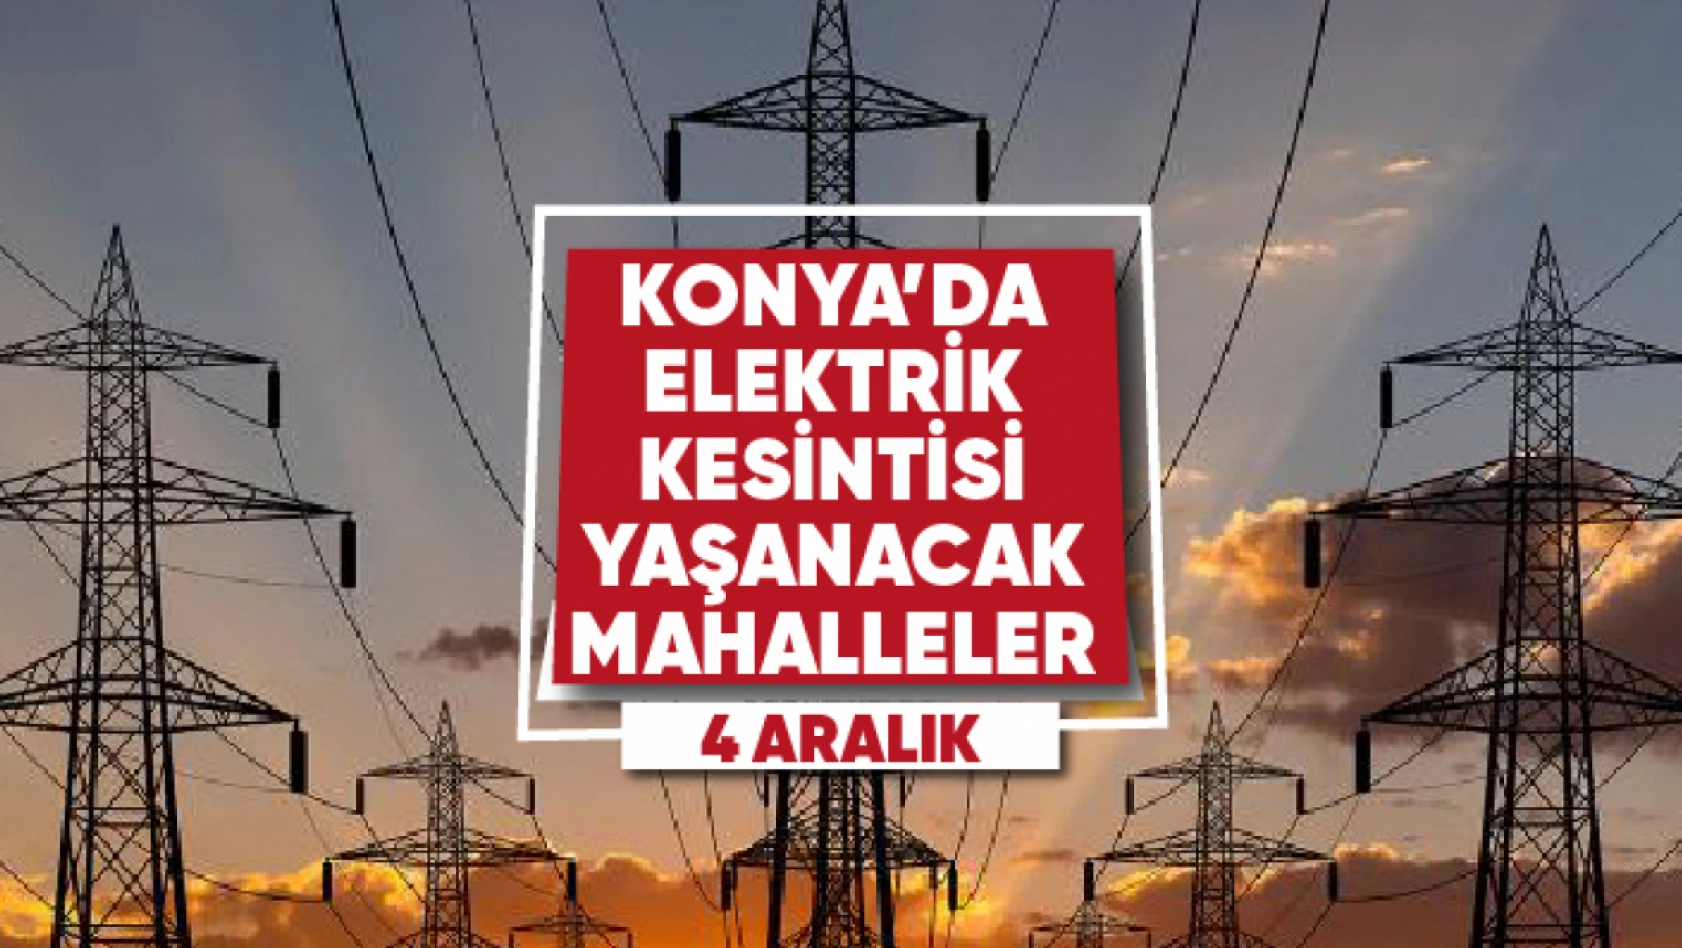 Konya'da elektrik kesintisi yaşanacak mahalle ve sokaklar (4 Aralık)